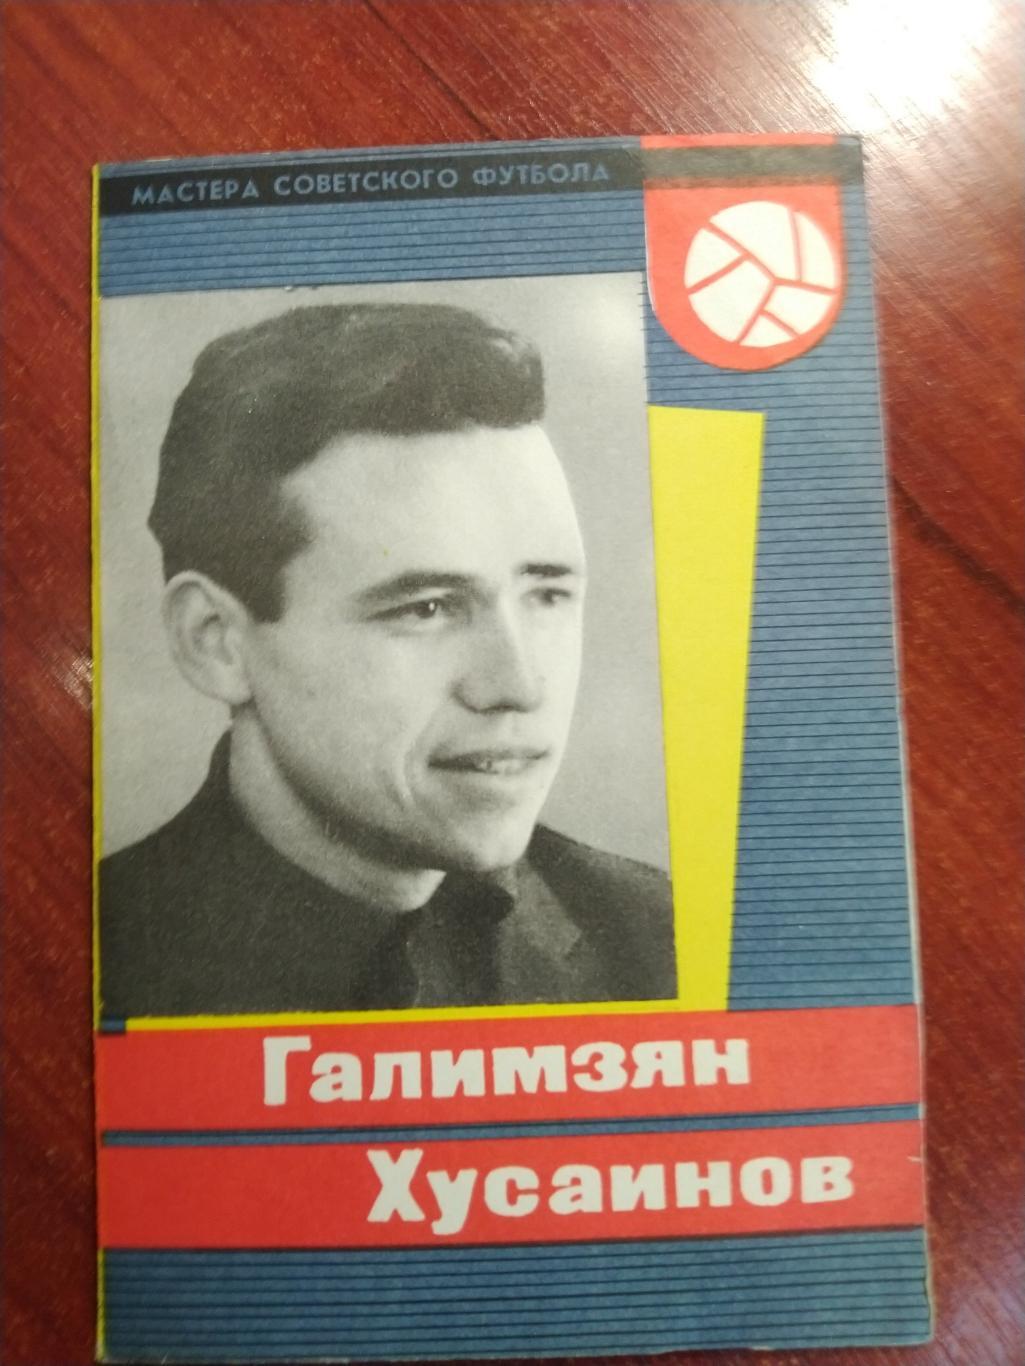 Мастера советского футбола Галимзян Хусаинов